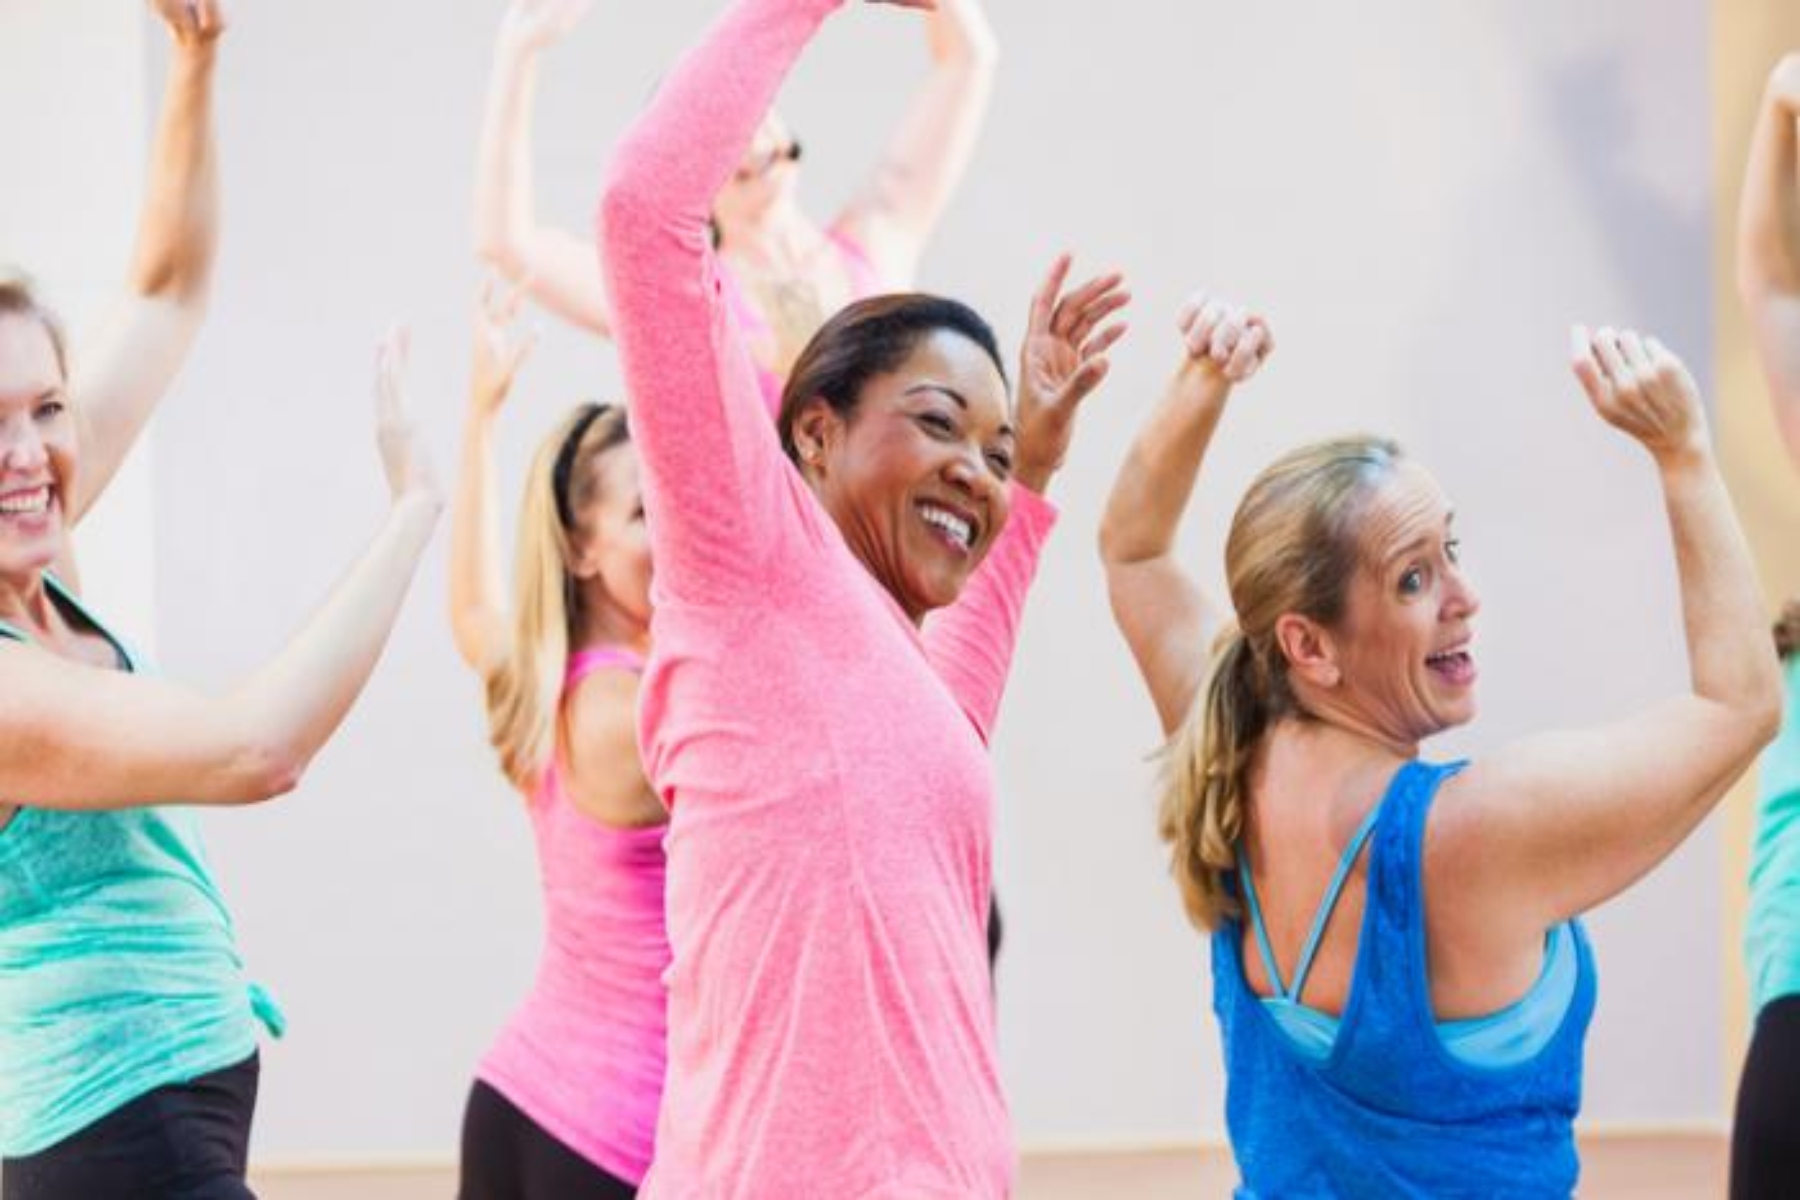 Καρκίνος μαστού άσκηση: Ειδικά διαμορφωμένο πρόγραμμα γυμναστικής μειώνει τον πόνο και την ενόχληση